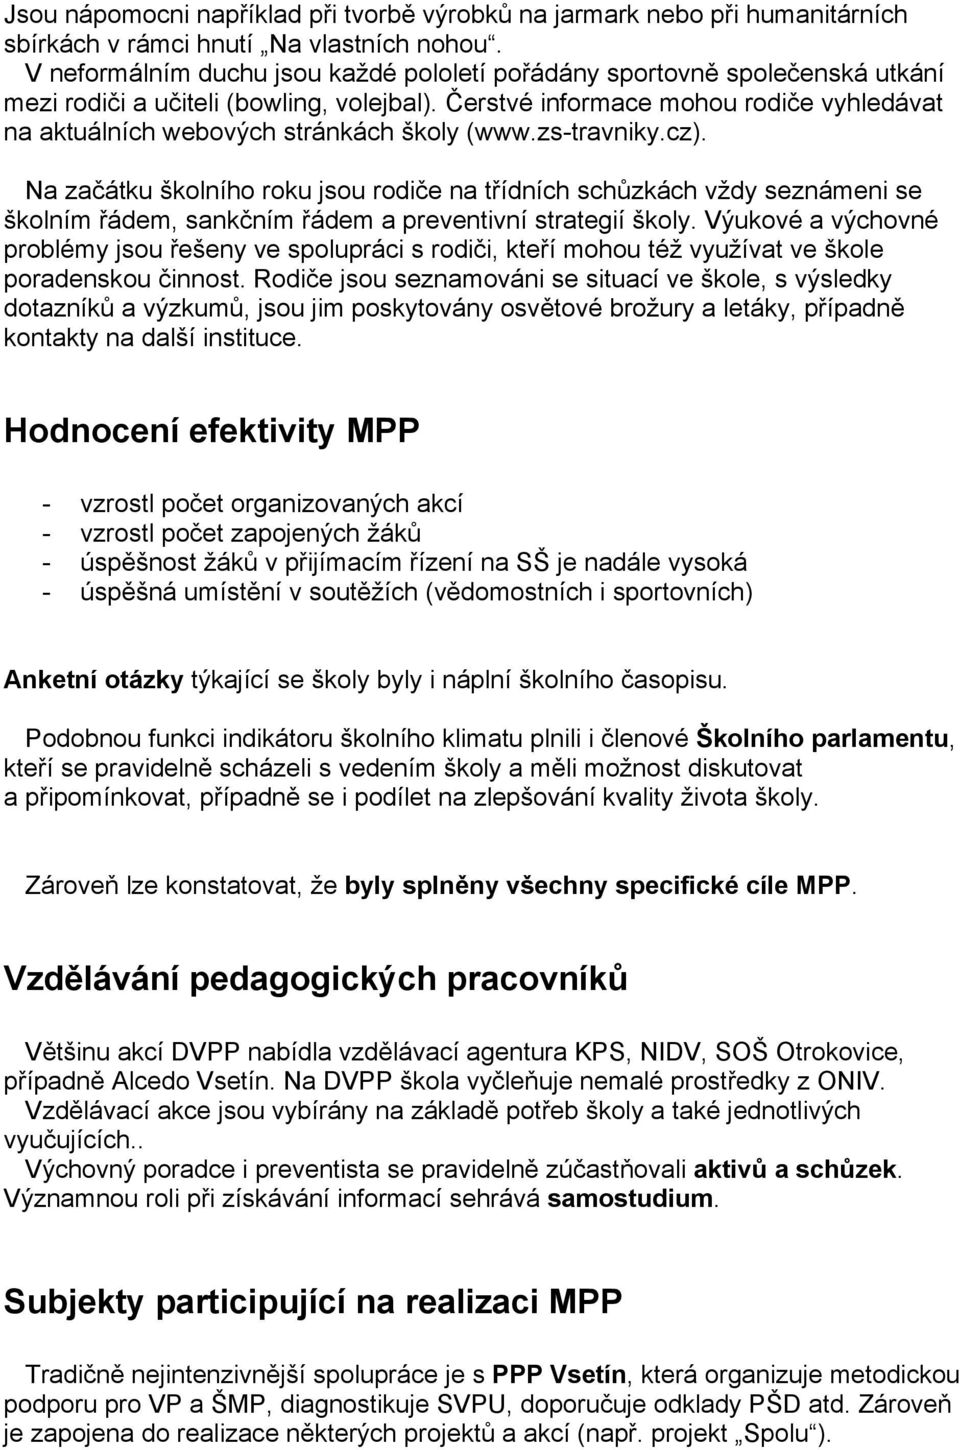 Čerstvé informace mohou rodiče vyhledávat na aktuálních webových stránkách školy (www.zs-travniky.cz).